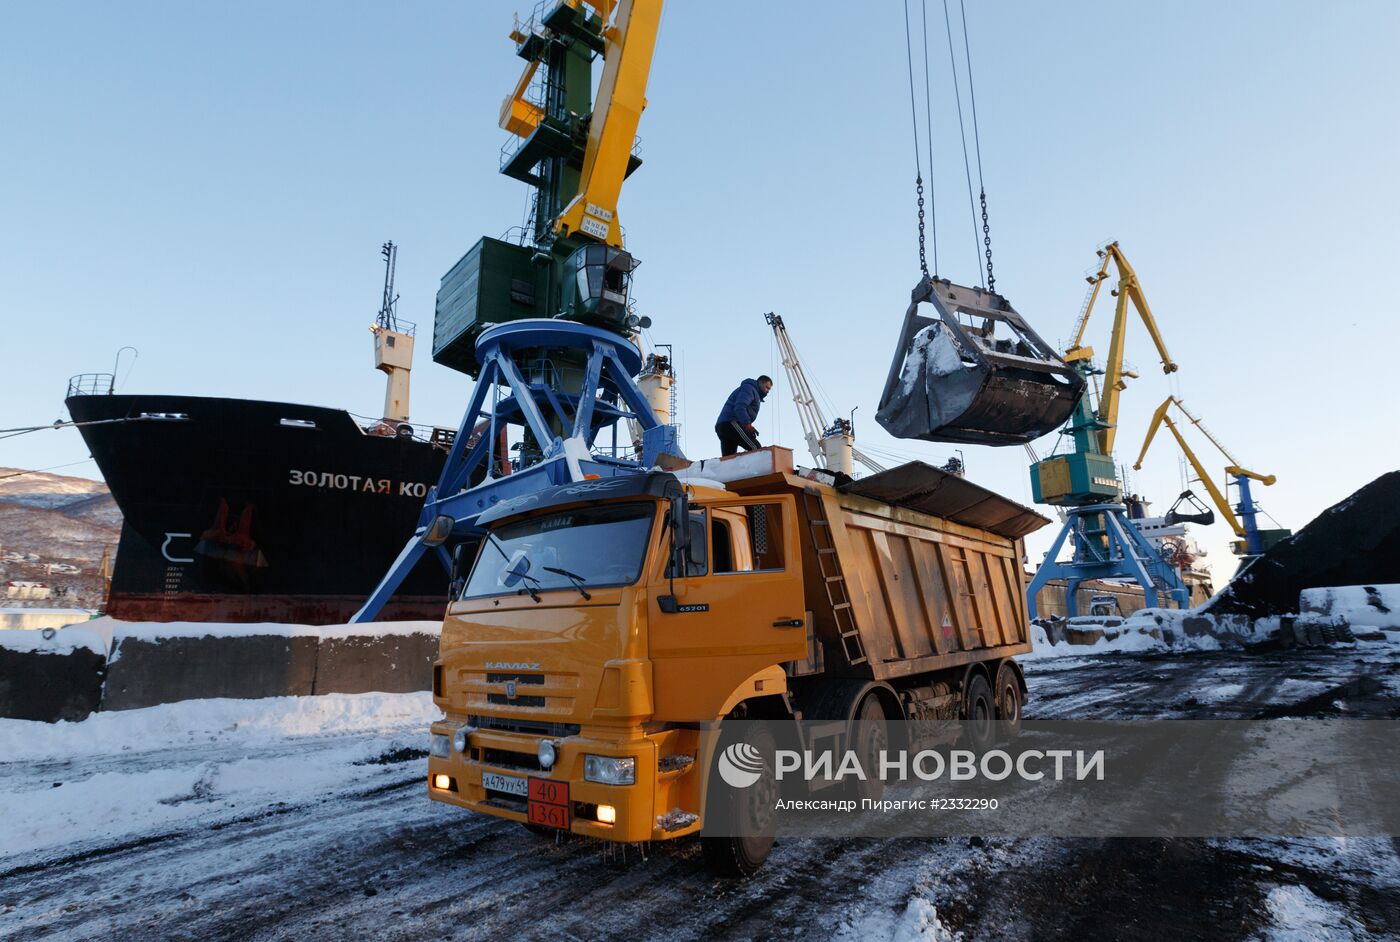 Петропавловск-Камчатский морской торговый порт